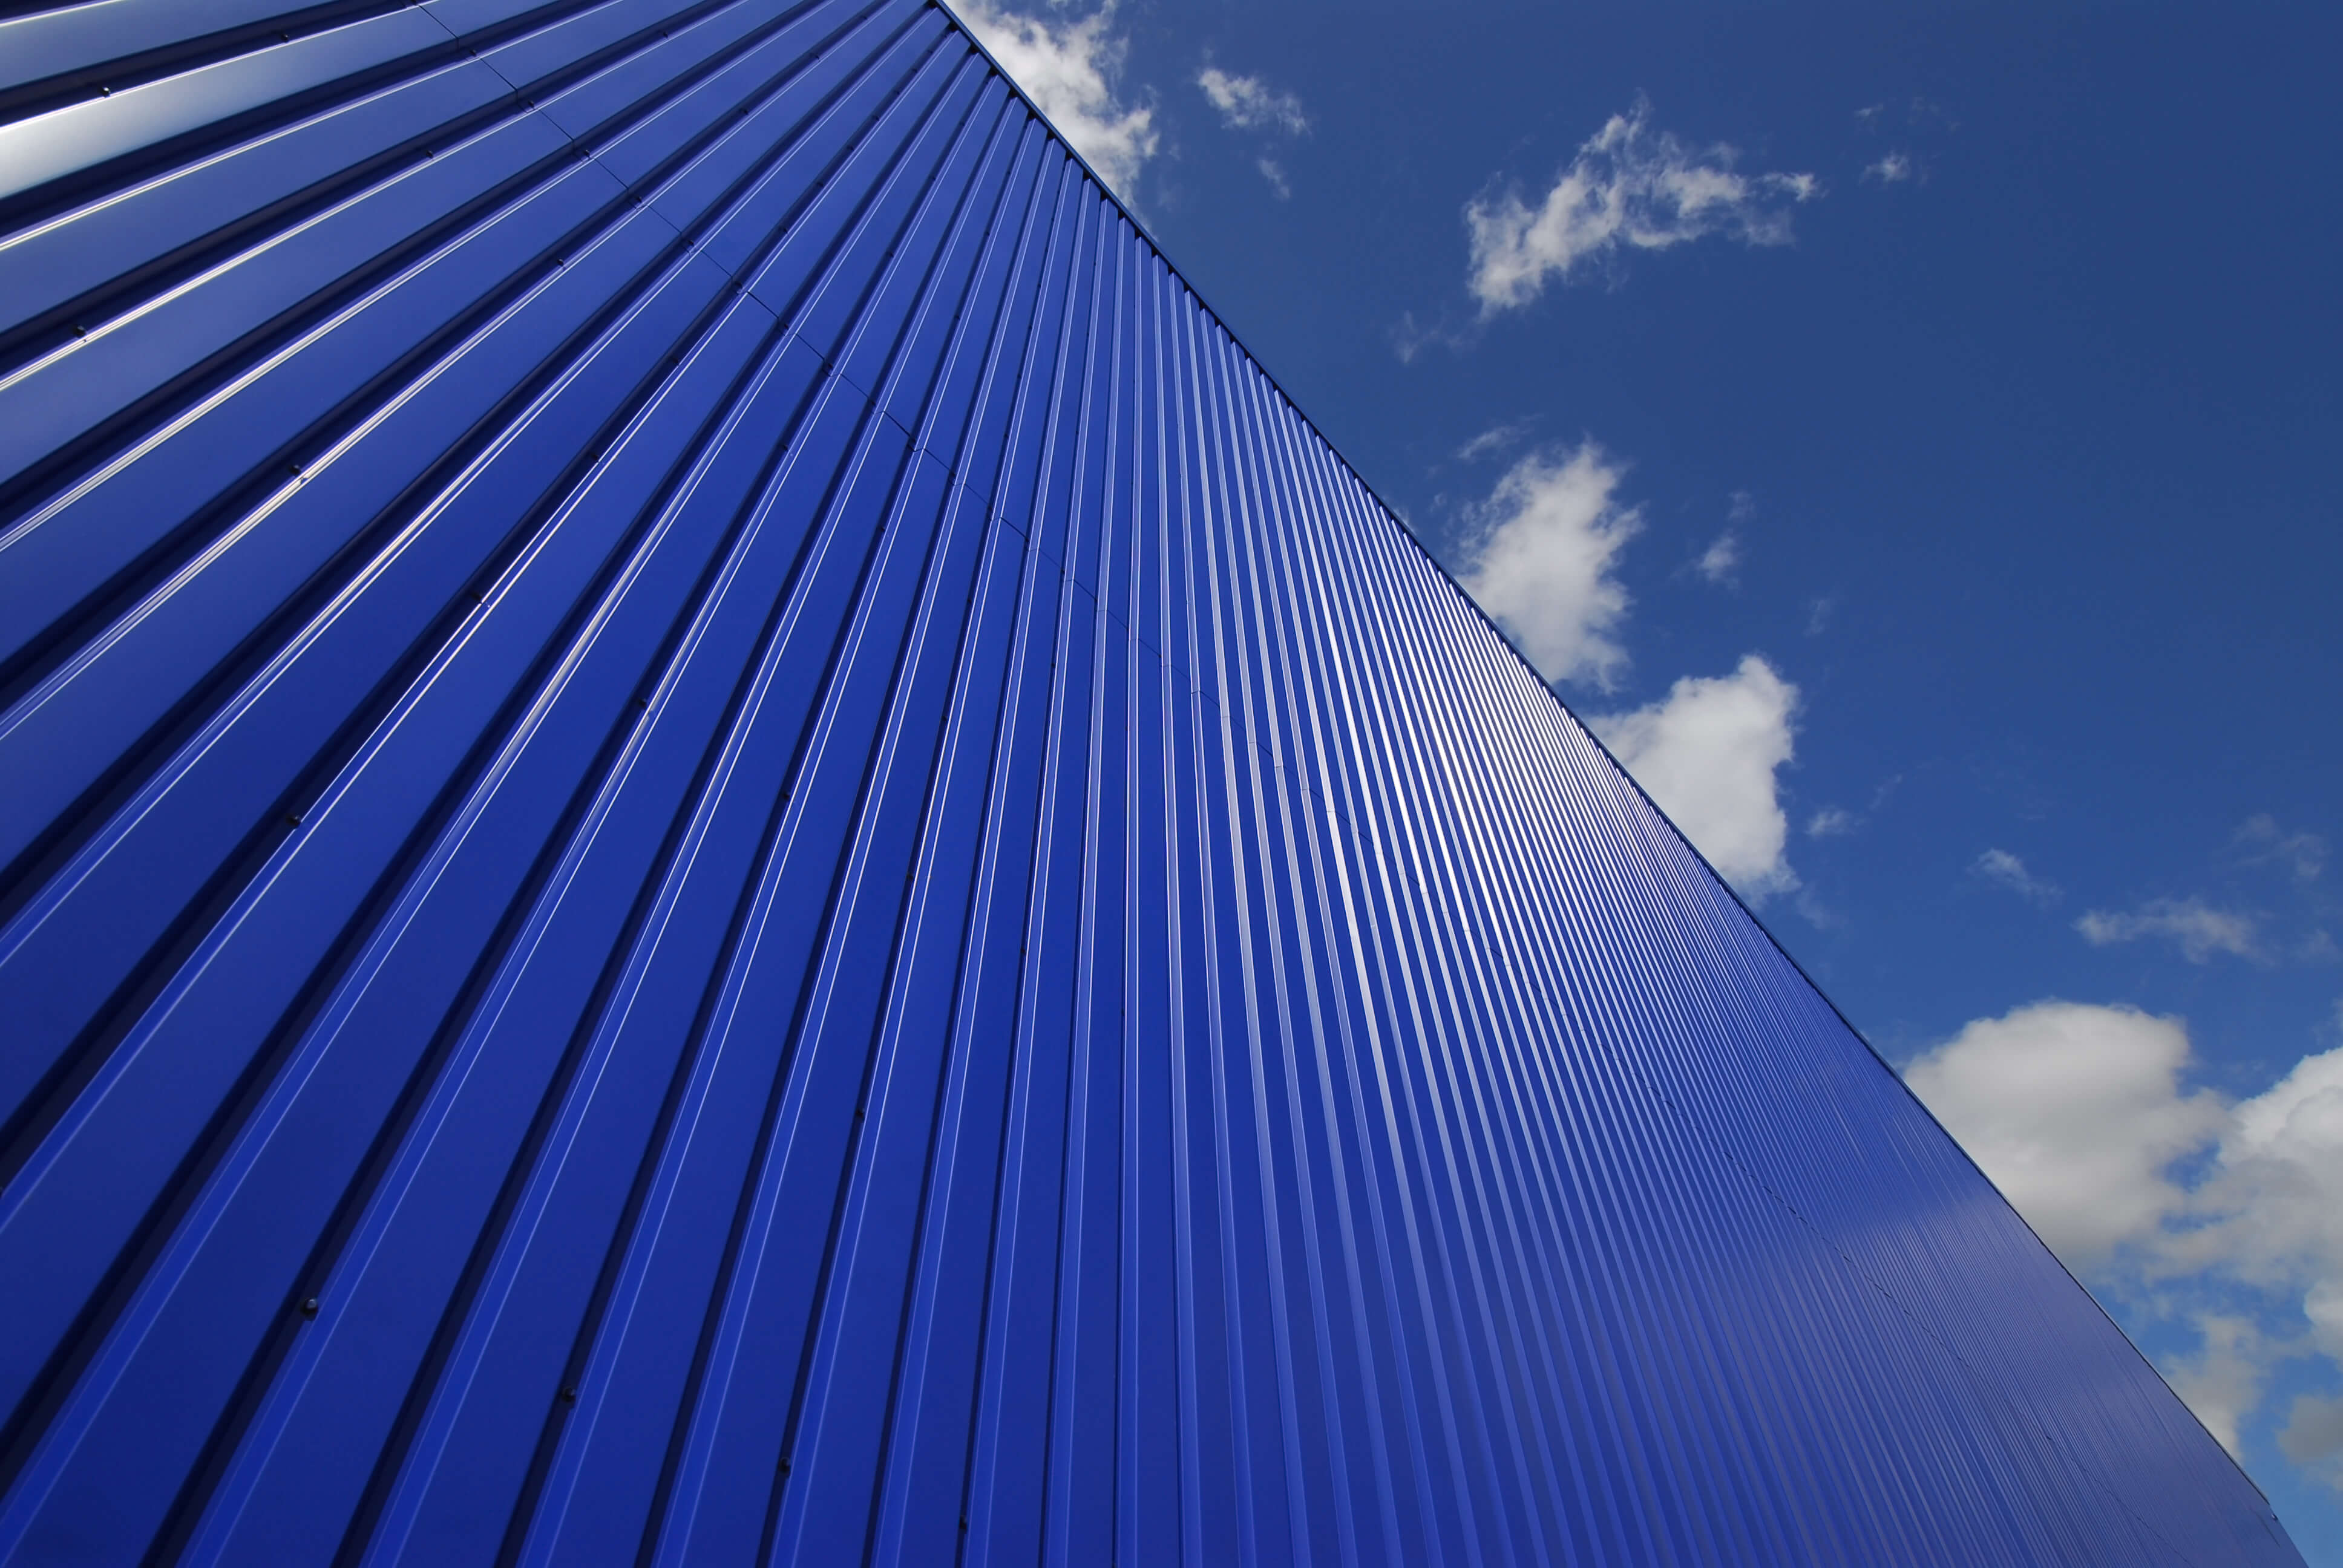 Blue Metal Cladding Building Facade